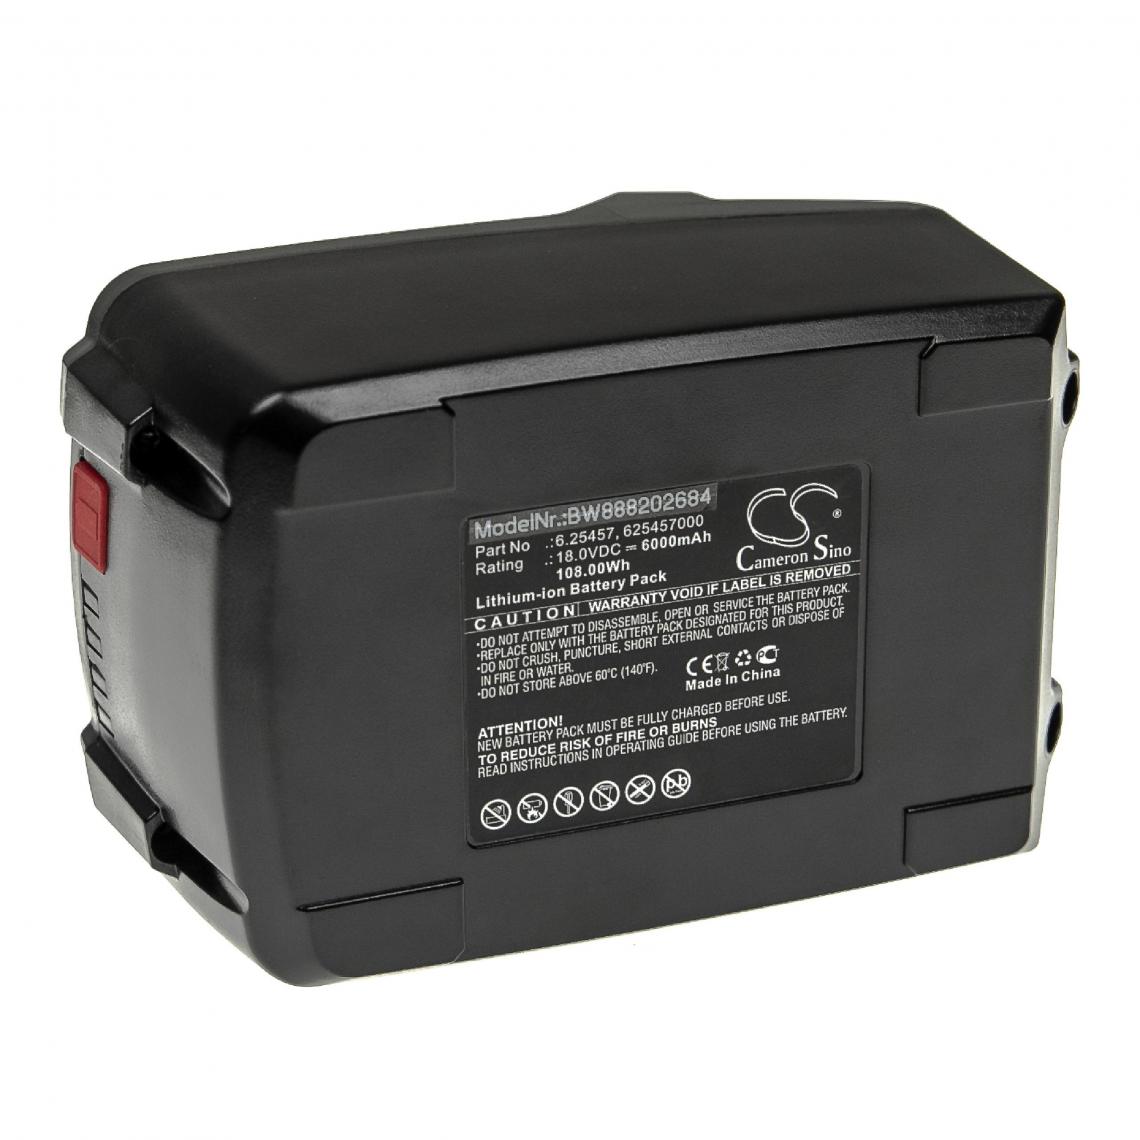 Vhbw - vhbw Batterie compatible avec Metabo SB 18 LT Set 602103600, SB 18 LT Set 602103640 outil électrique (6000mAh Li-ion 18 V) - Autre appareil de mesure